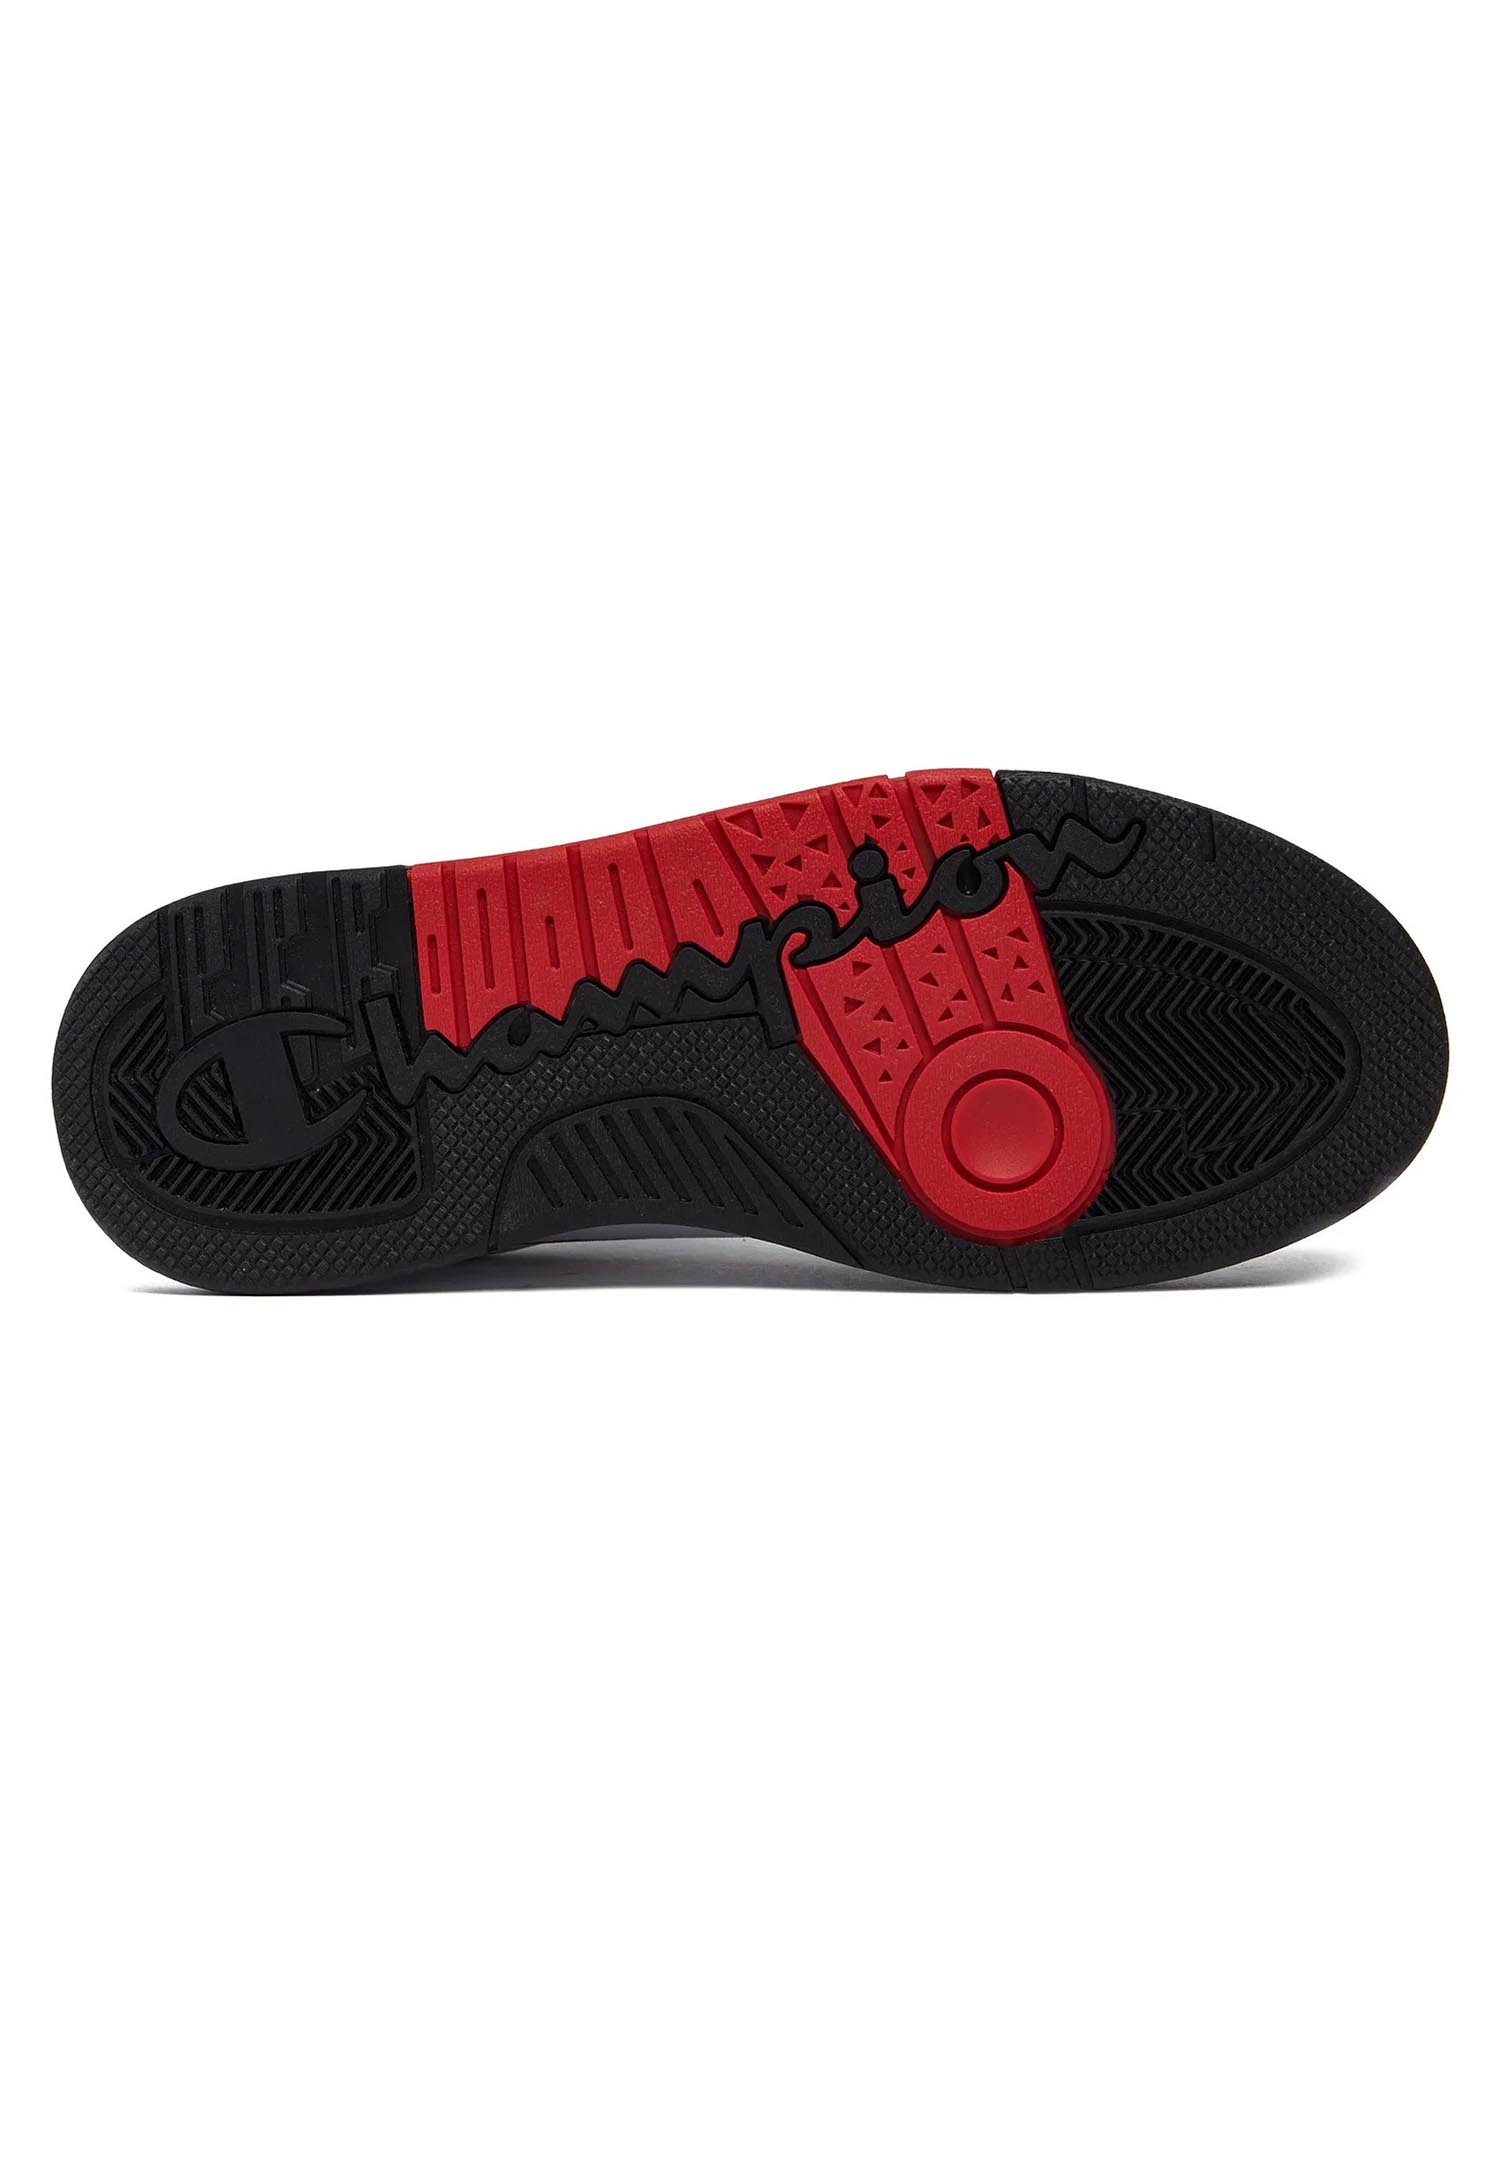 Champion REBOUND HERITAGE LOW Herren Sneaker S22030-CHA-WW012 weiß/rot/schwarz